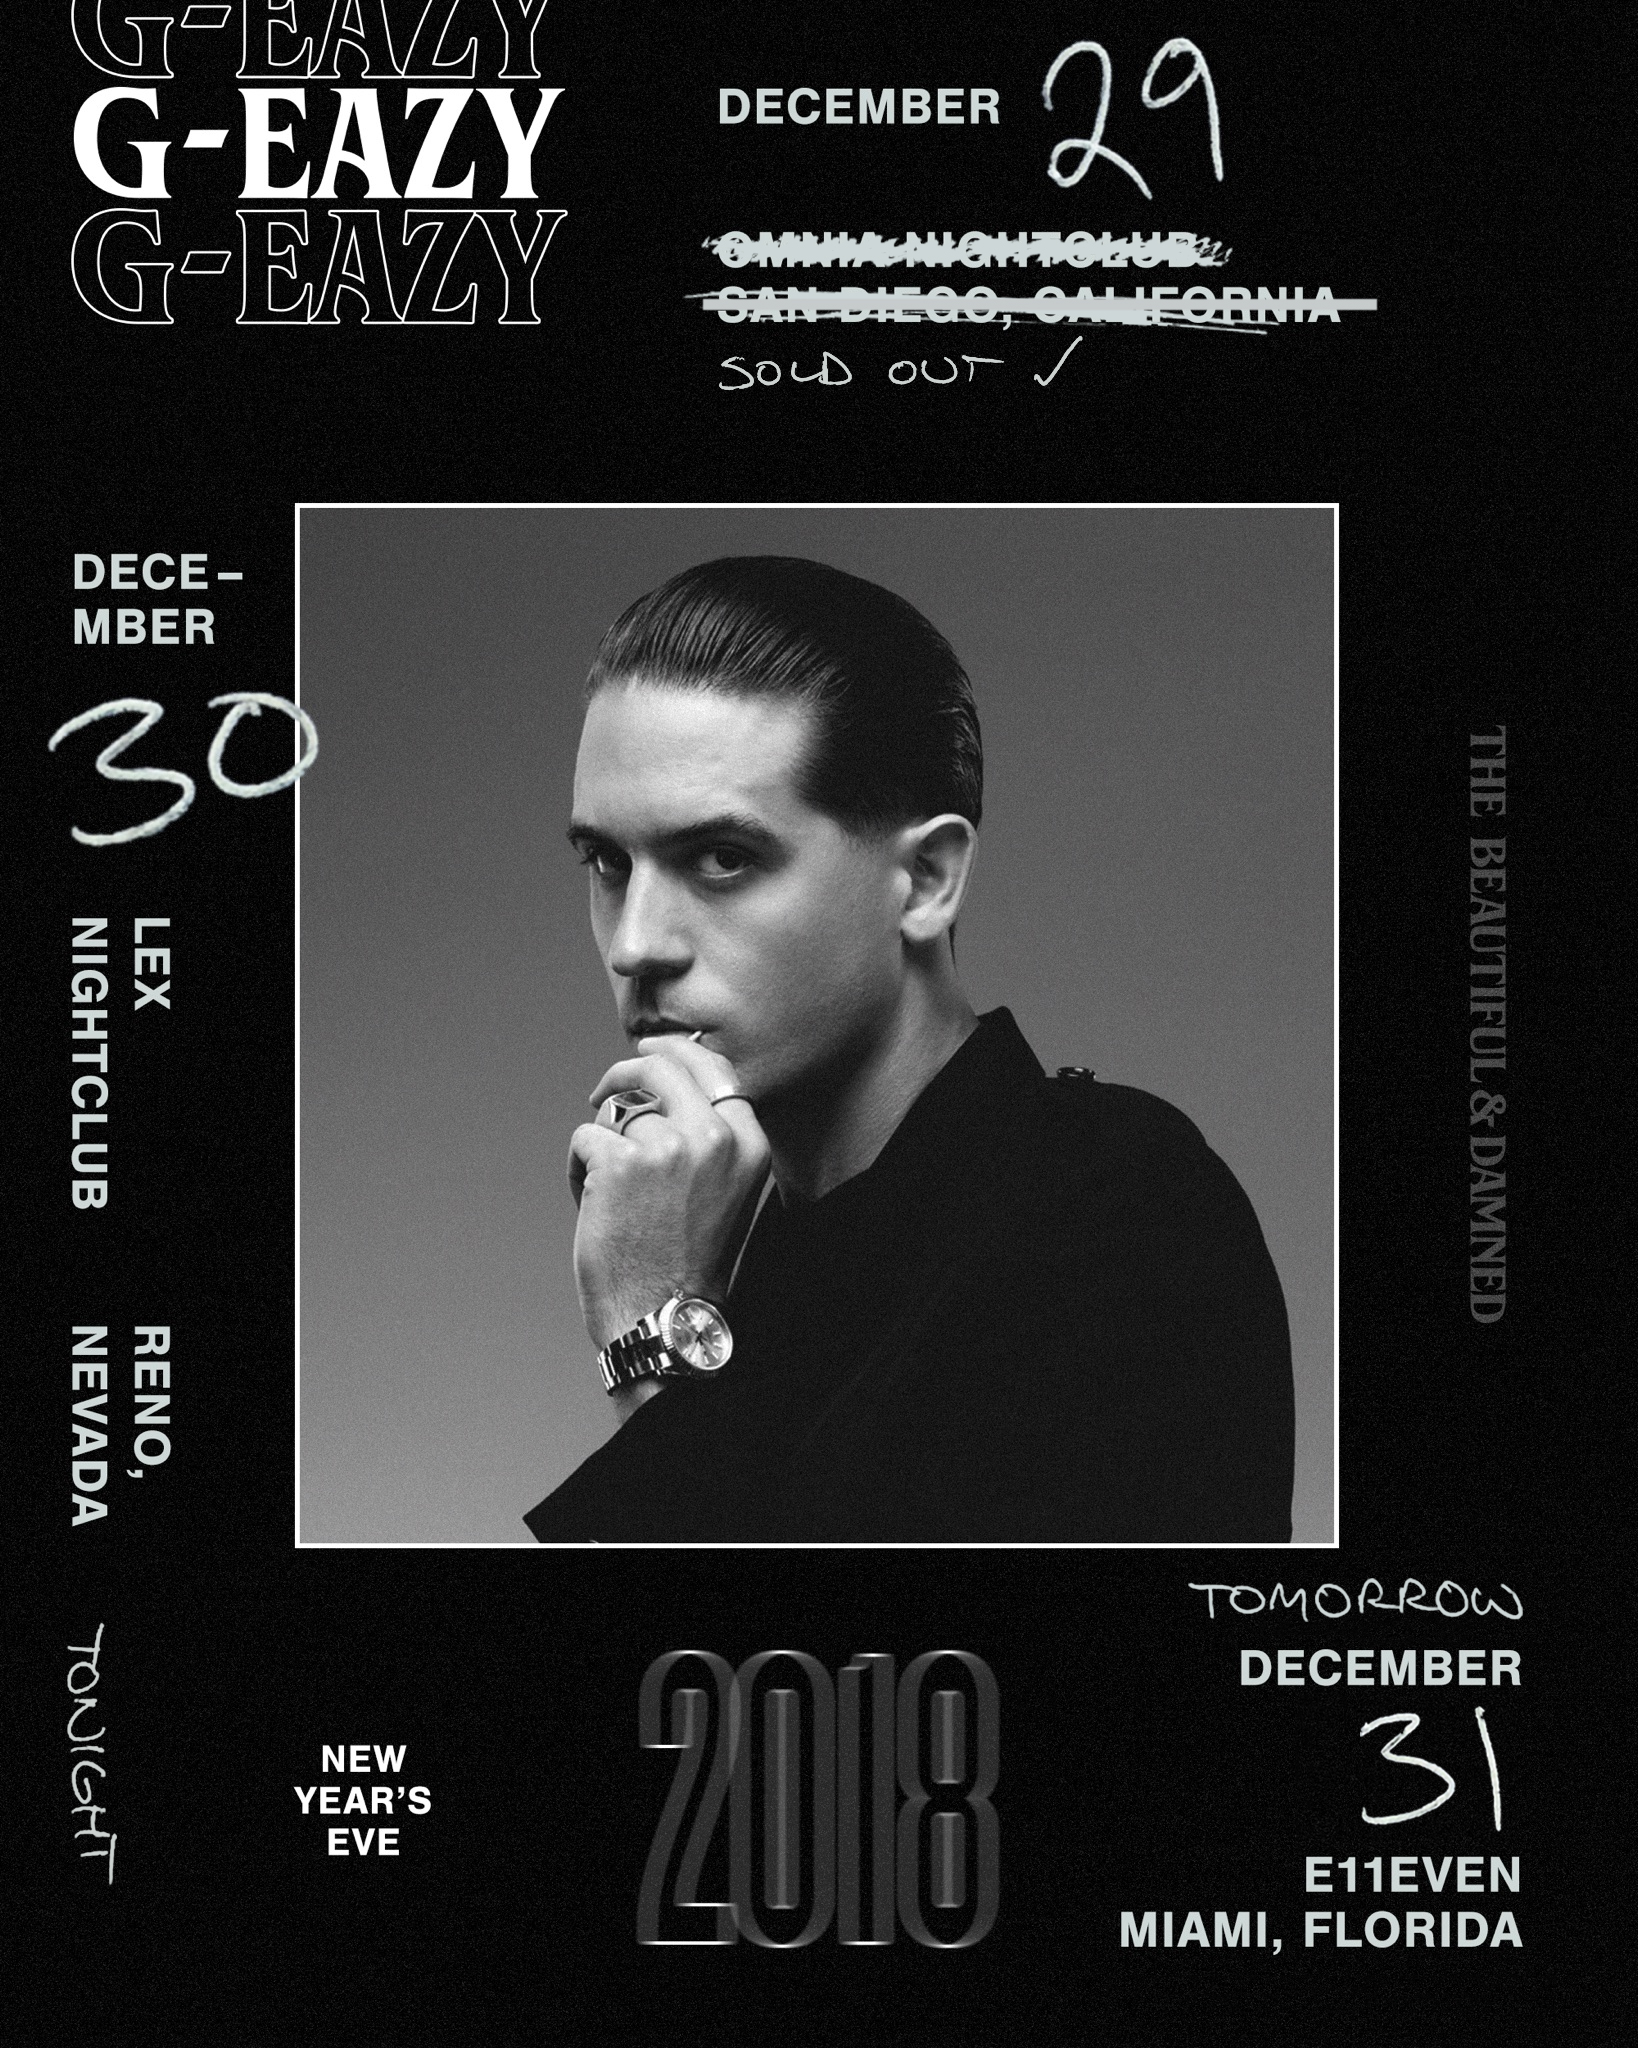   G-EAZY (NYE 2018)   —  Design:  John Liwag  